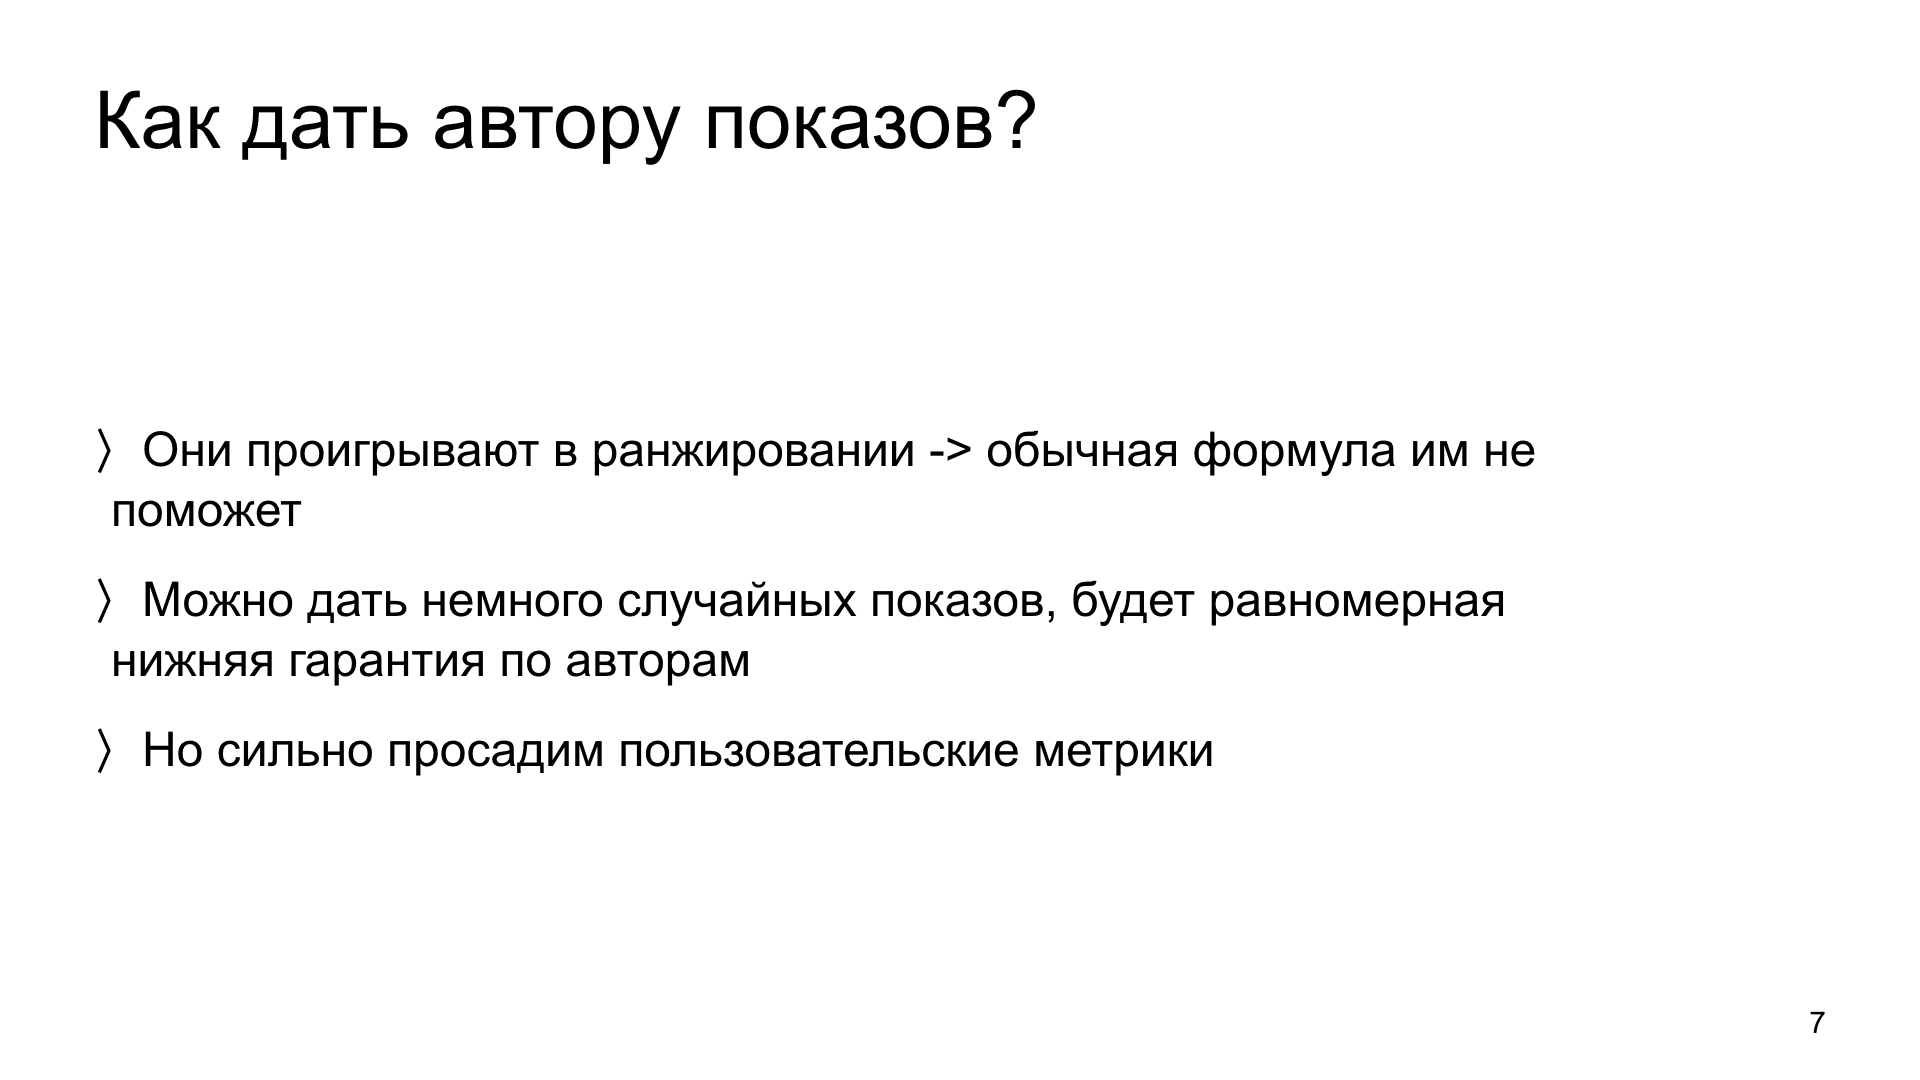 Автороцентричное ранжирование. Доклад Яндекса о поиске релевантной аудитории для авторов Дзена - 7